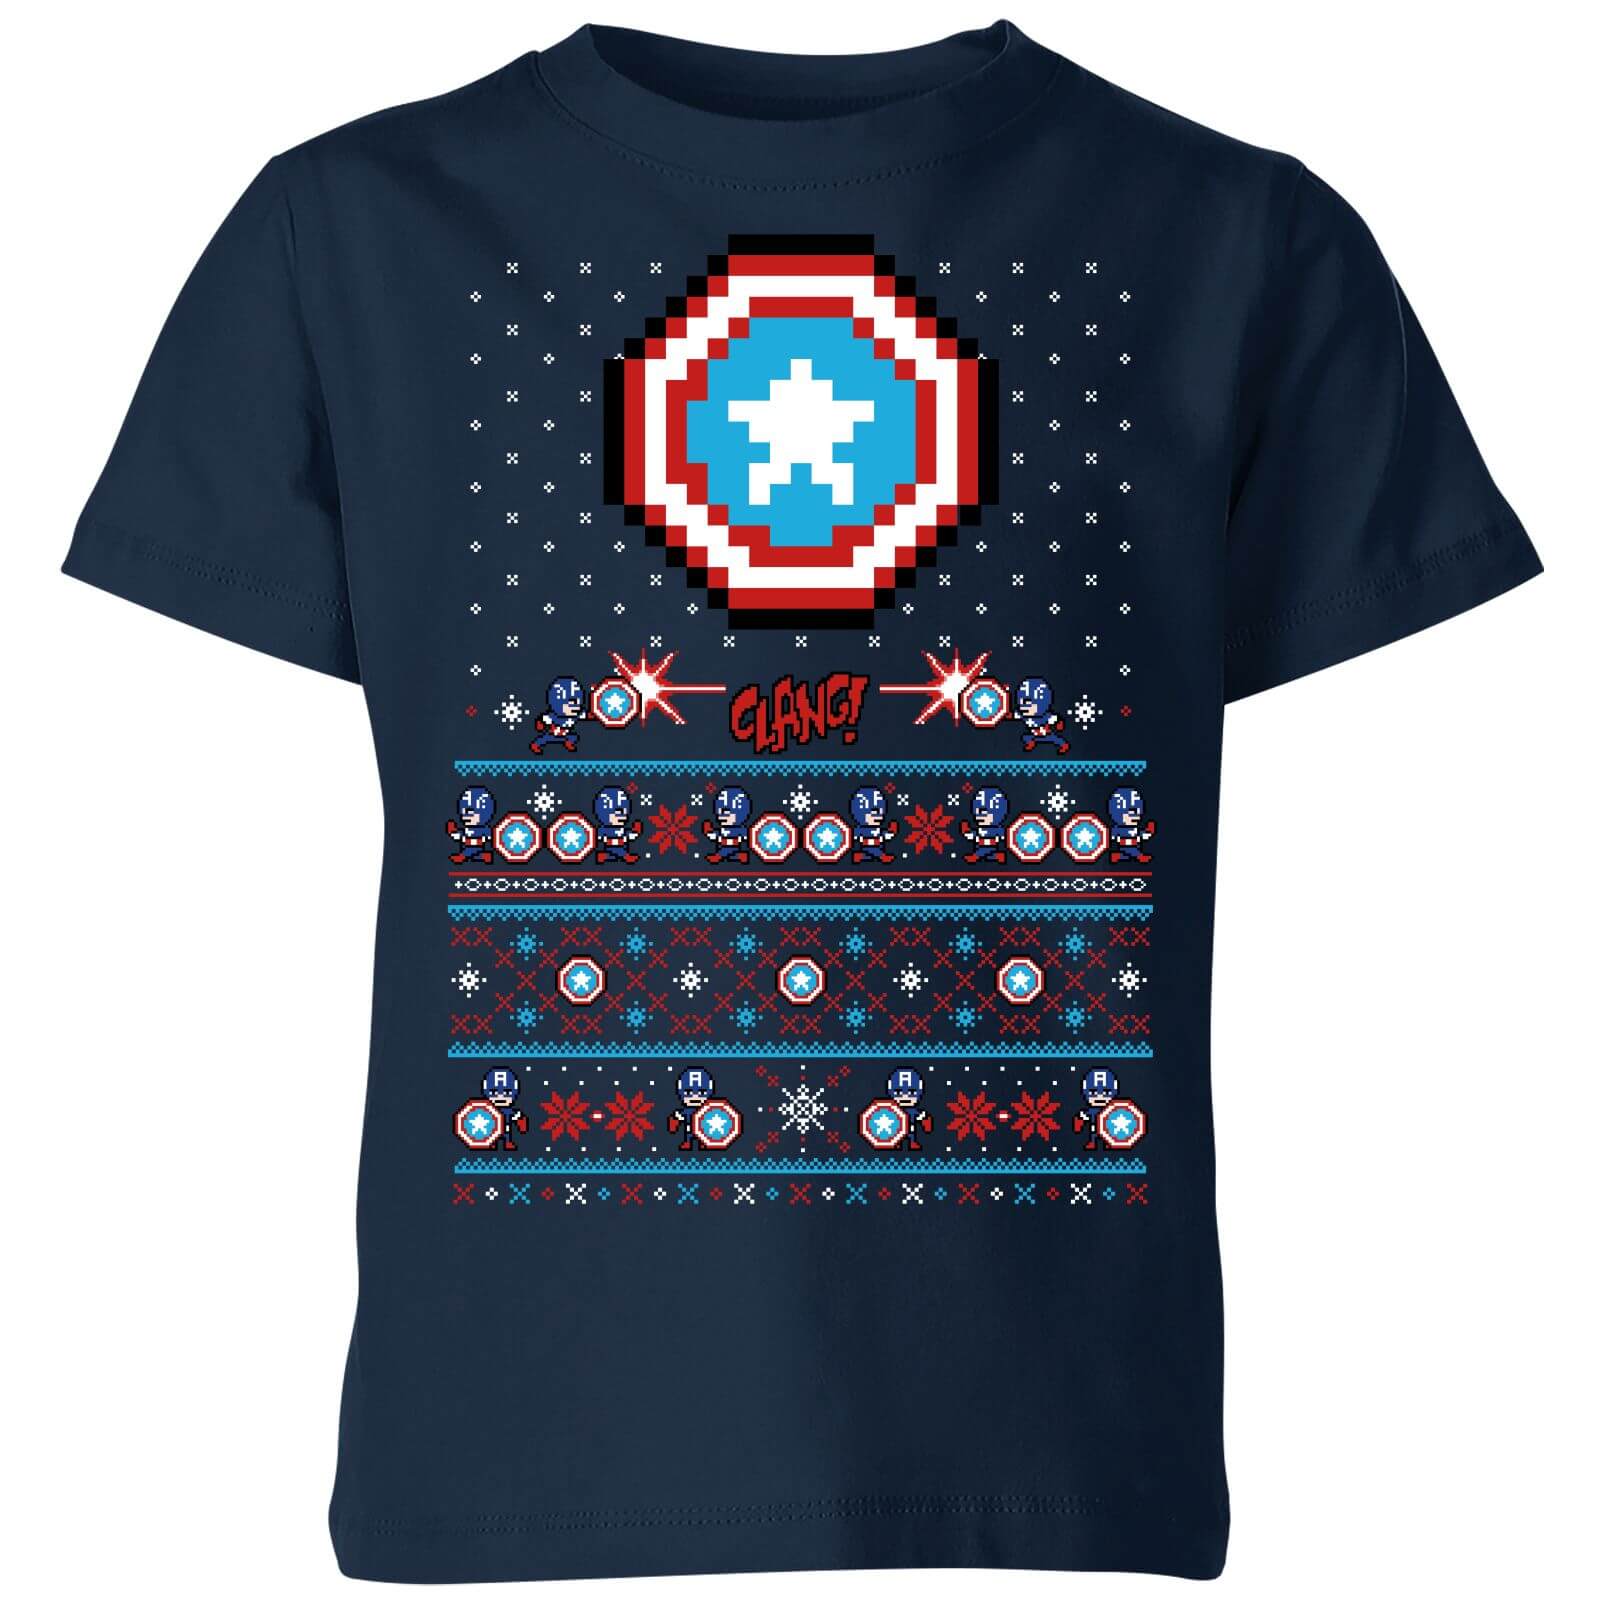 Marvel Avengers Captain America Pixel Art Kids Christmas T-Shirt - Navy - 7-8 Years - Navy